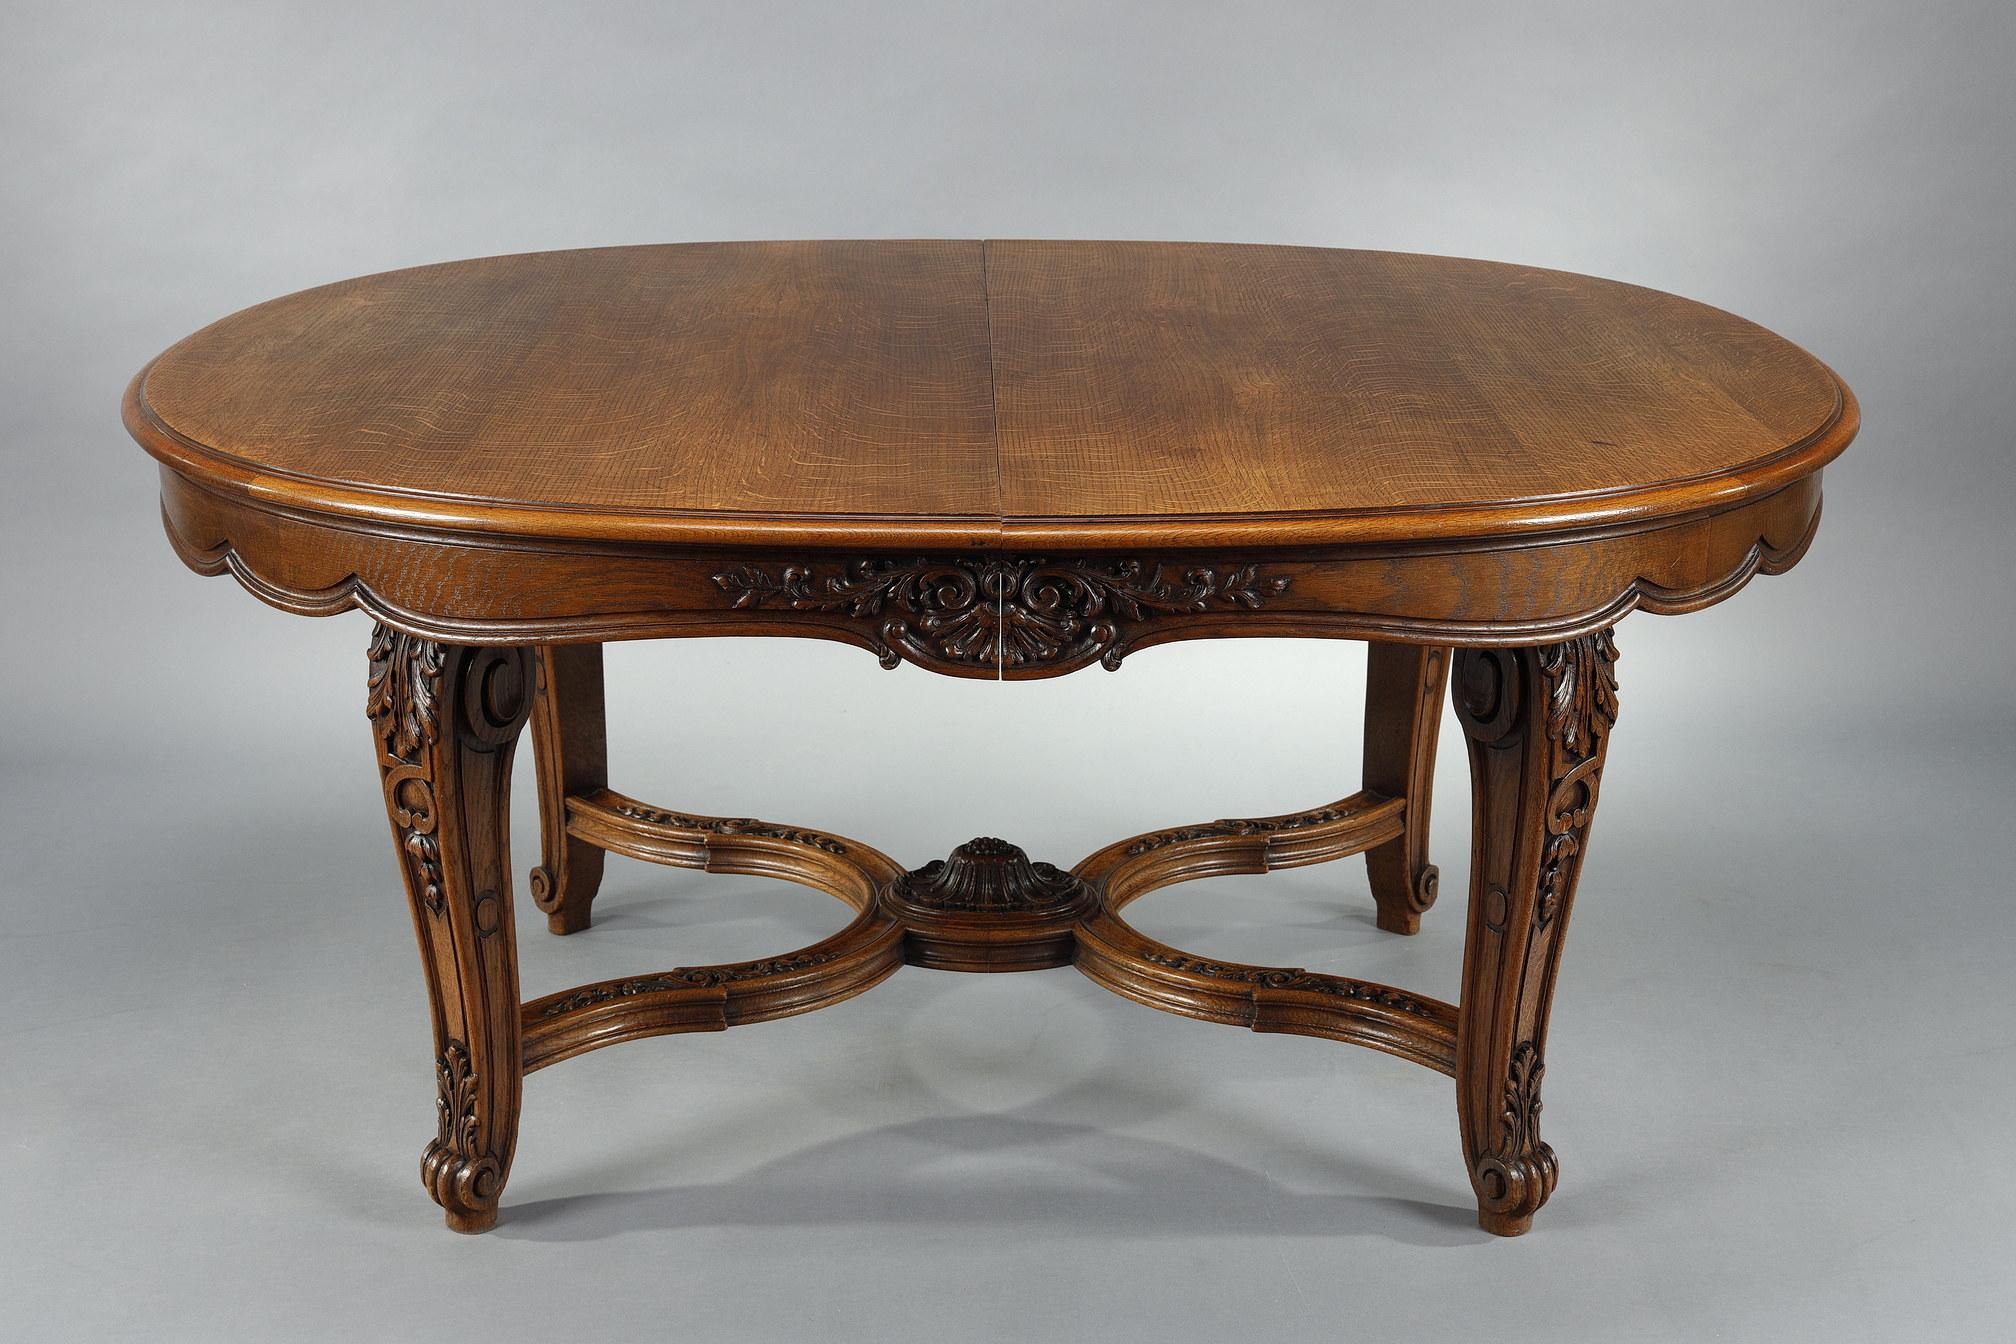 Dieser schöne Tisch, seine 9 Stühle und 2 Sessel sind Teil einer seltenen und bedeutenden Essgarnitur im Regency-Stil aus geformter und geschnitzter Eiche. Der Tisch enthält 4 Verlängerungen von je 50 cm, was eine Gesamtlänge von 260 cm ergibt (mit